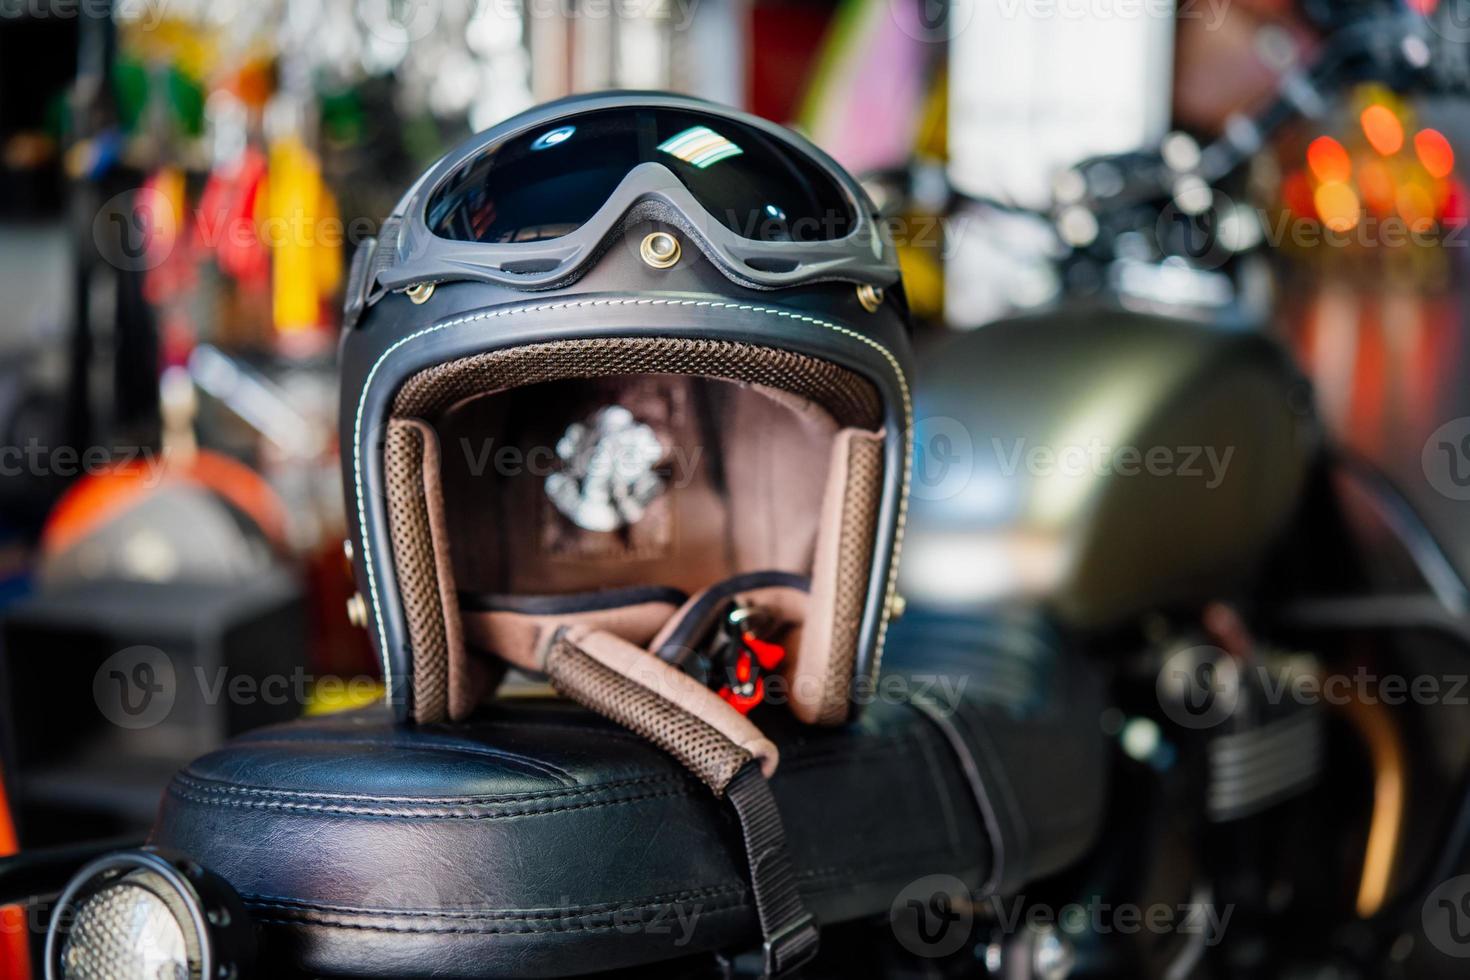 casques de moto sur moto, mise au point sélective photo